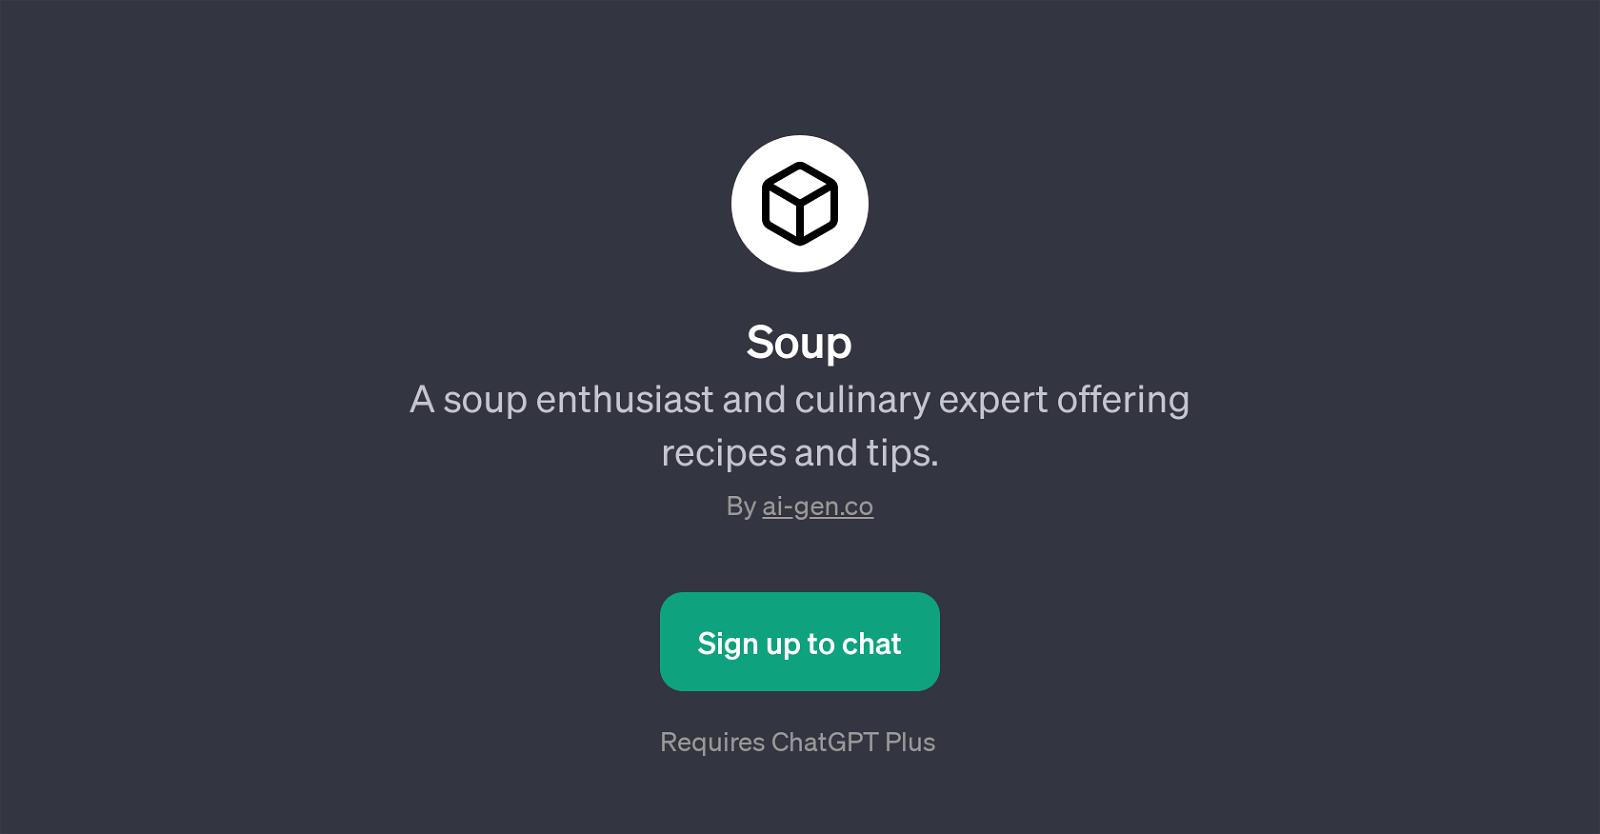 Soup website